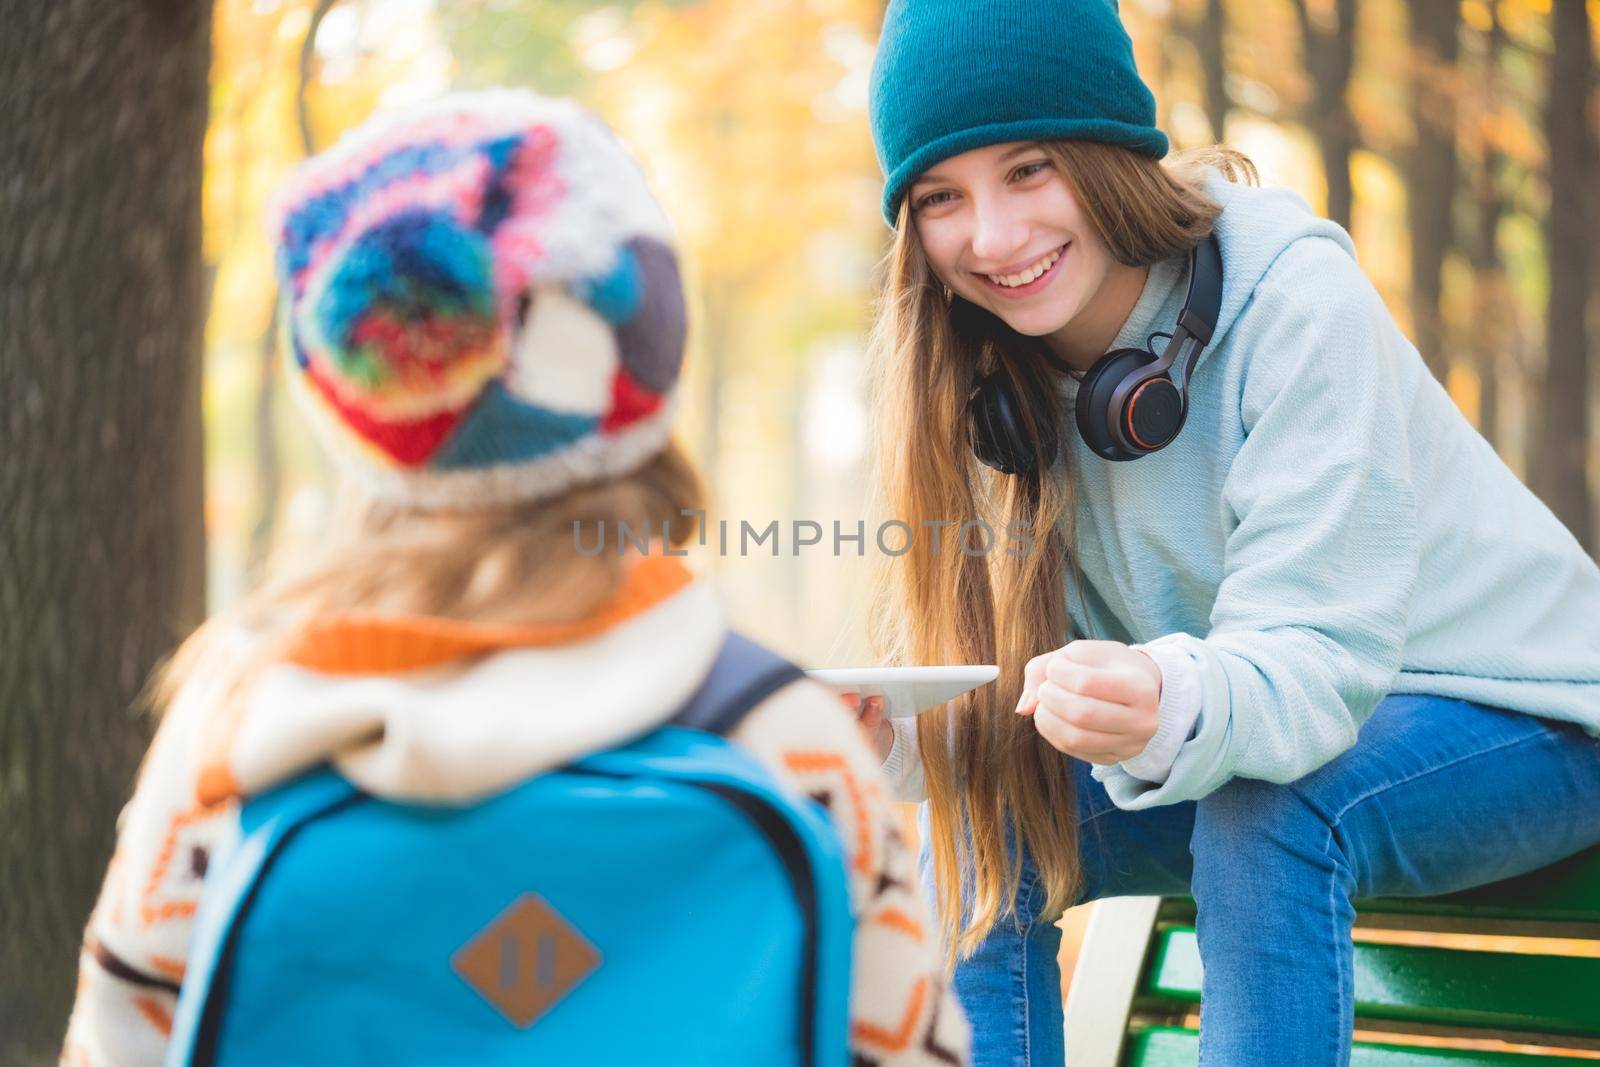 Older sister meets schoolgirl in autumn park